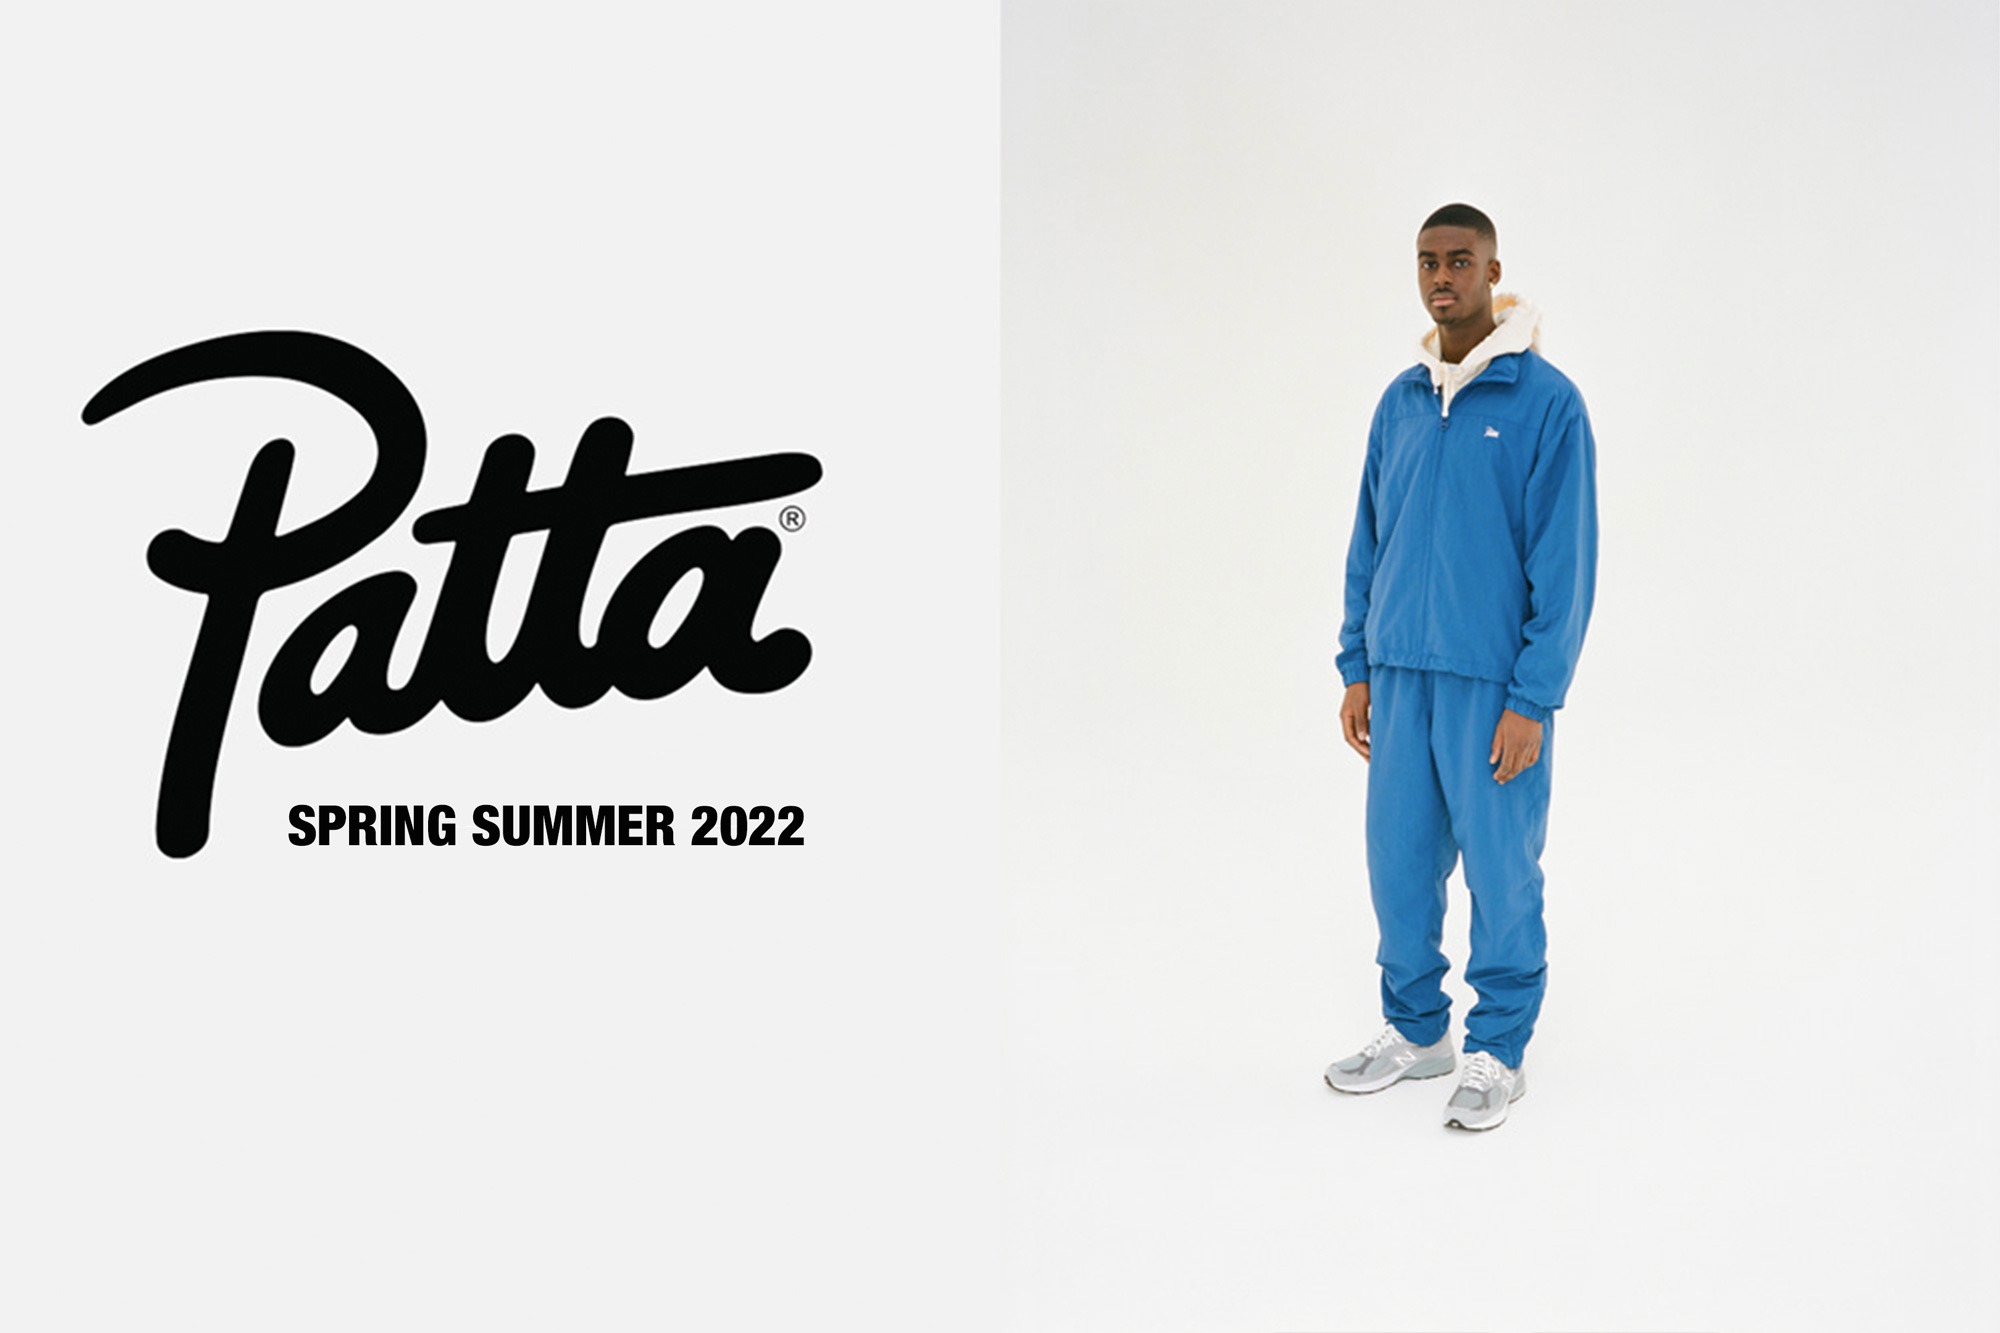 Spring Summer 2022 Basics